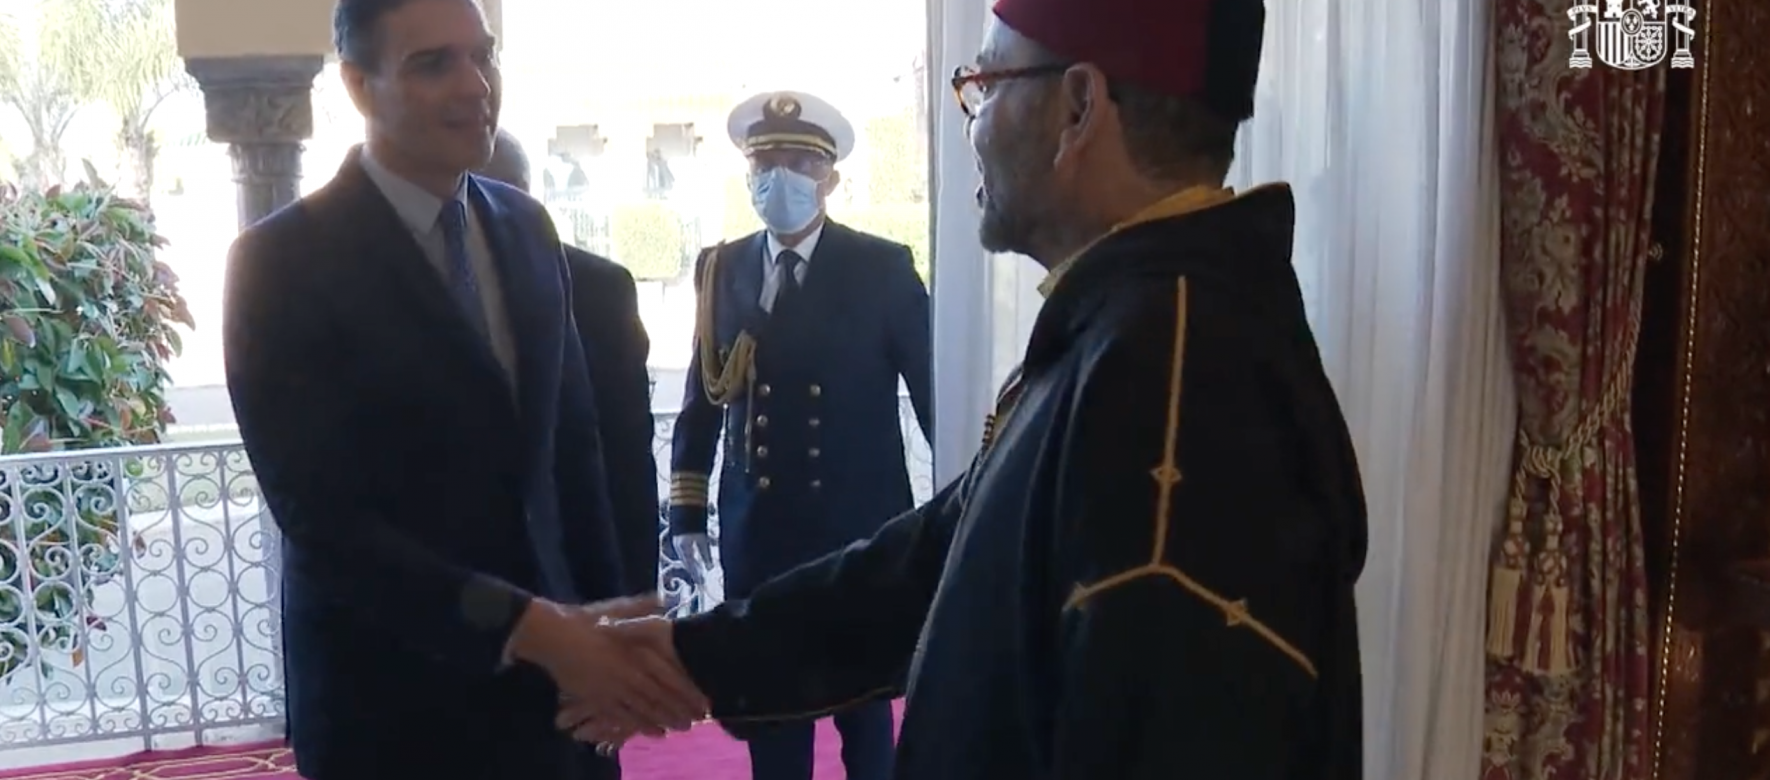 Le premier ministre d’Espagne en visite durant deux jours au Maroc pour développer les relations diplomatiques 1